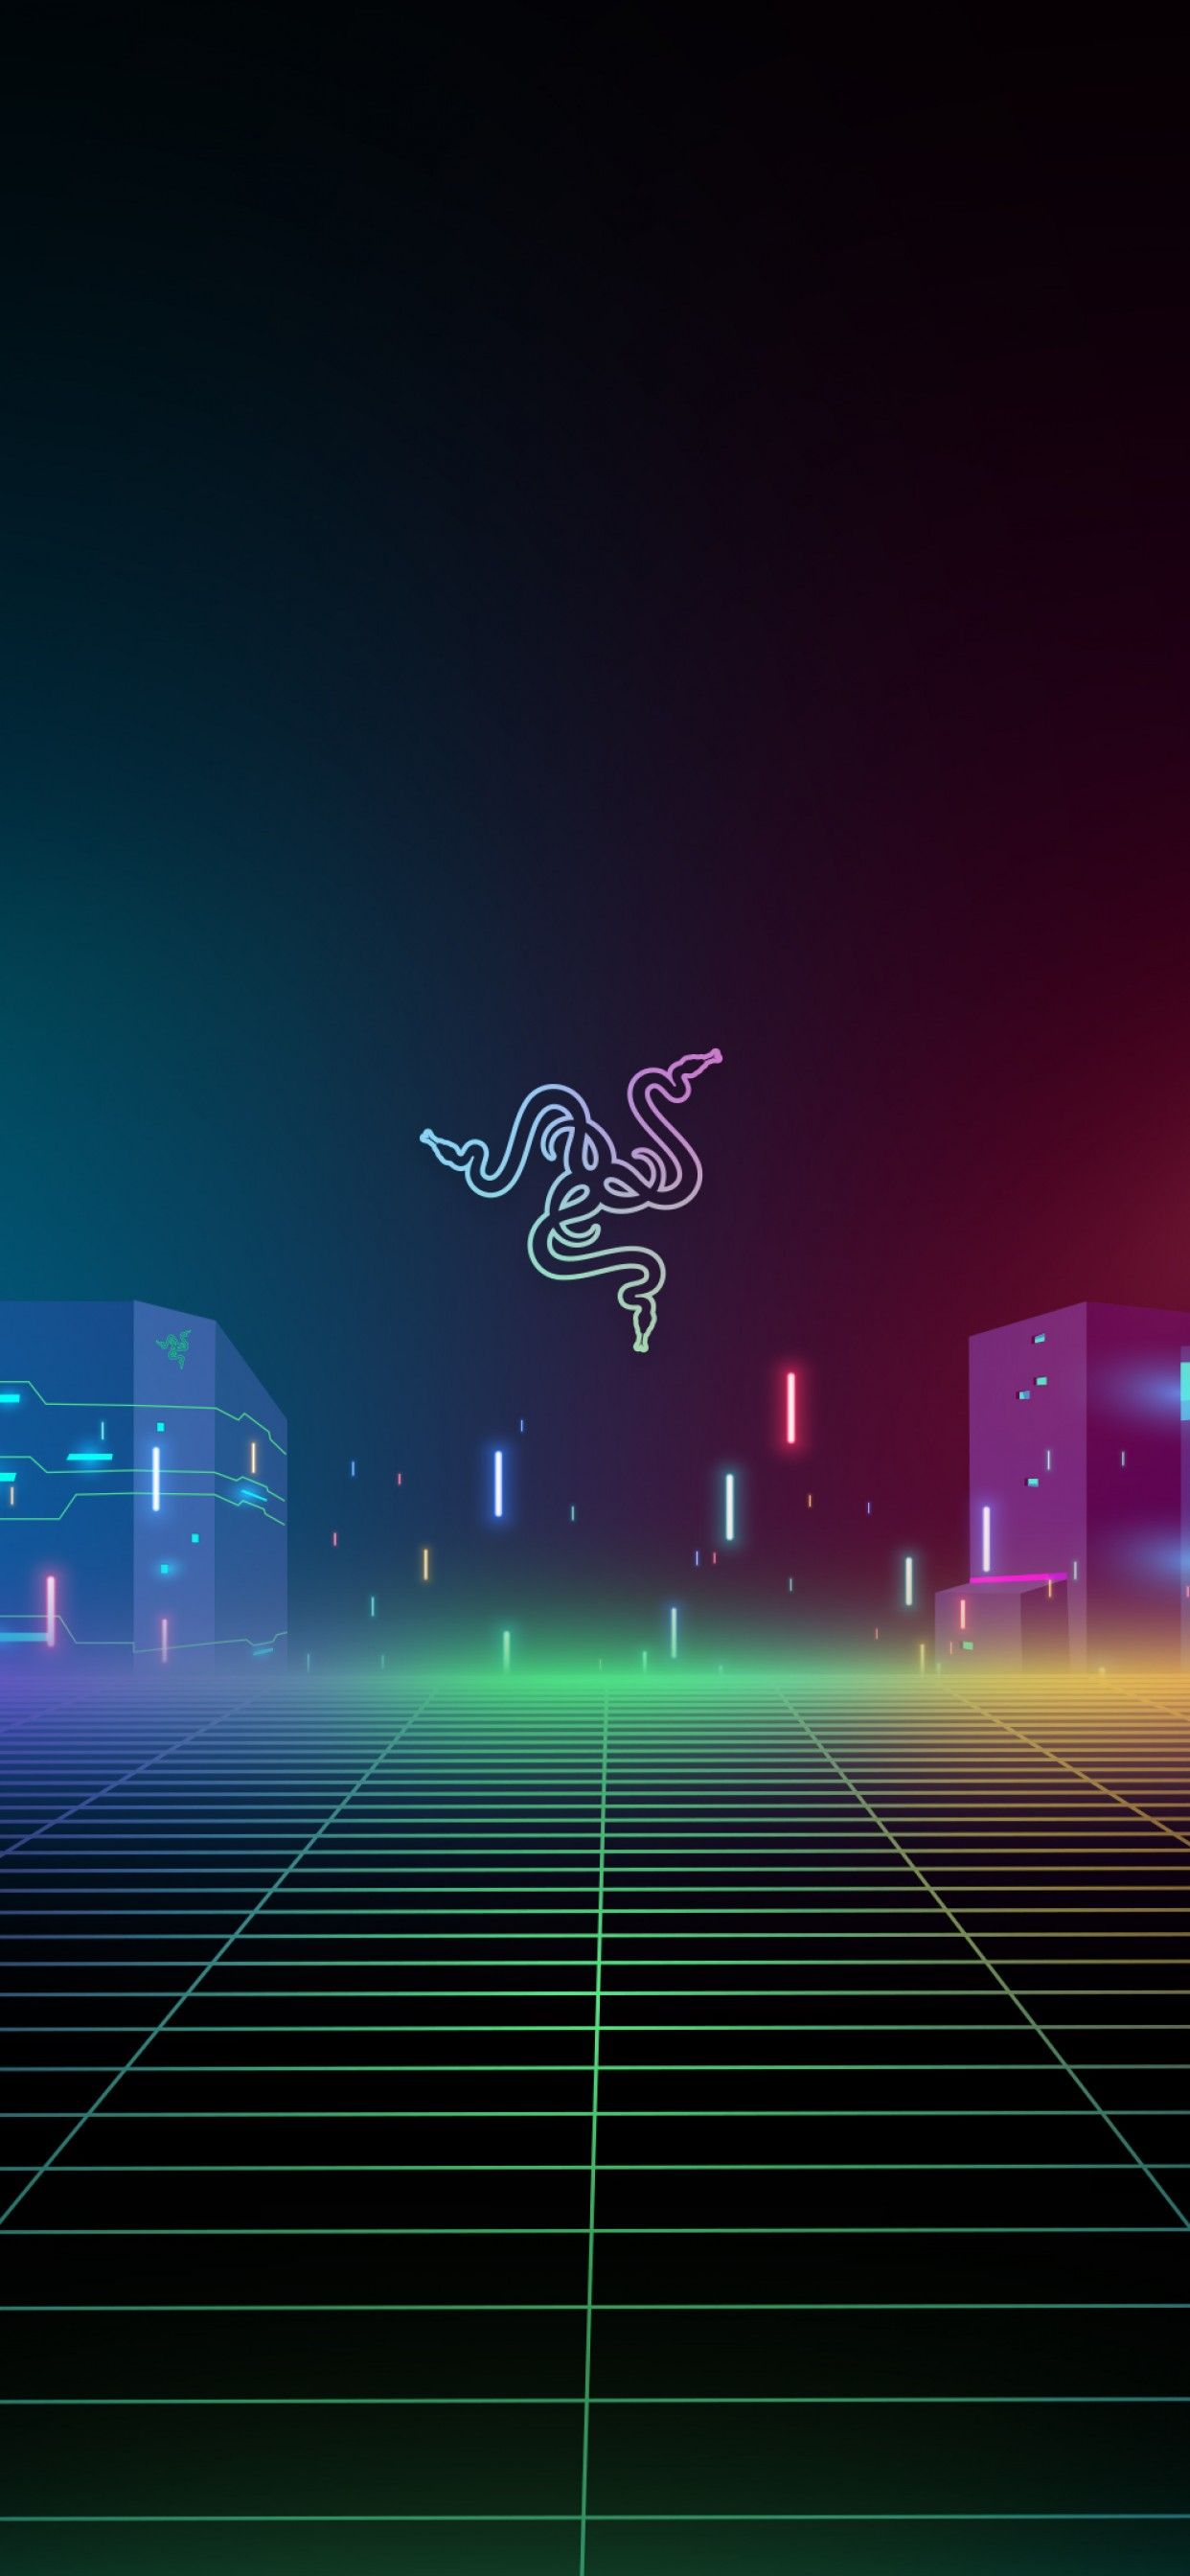 Razer 4K Wallpaper, Cyber city, Neon, Colorful, Cityscape, Futuristic, Technology